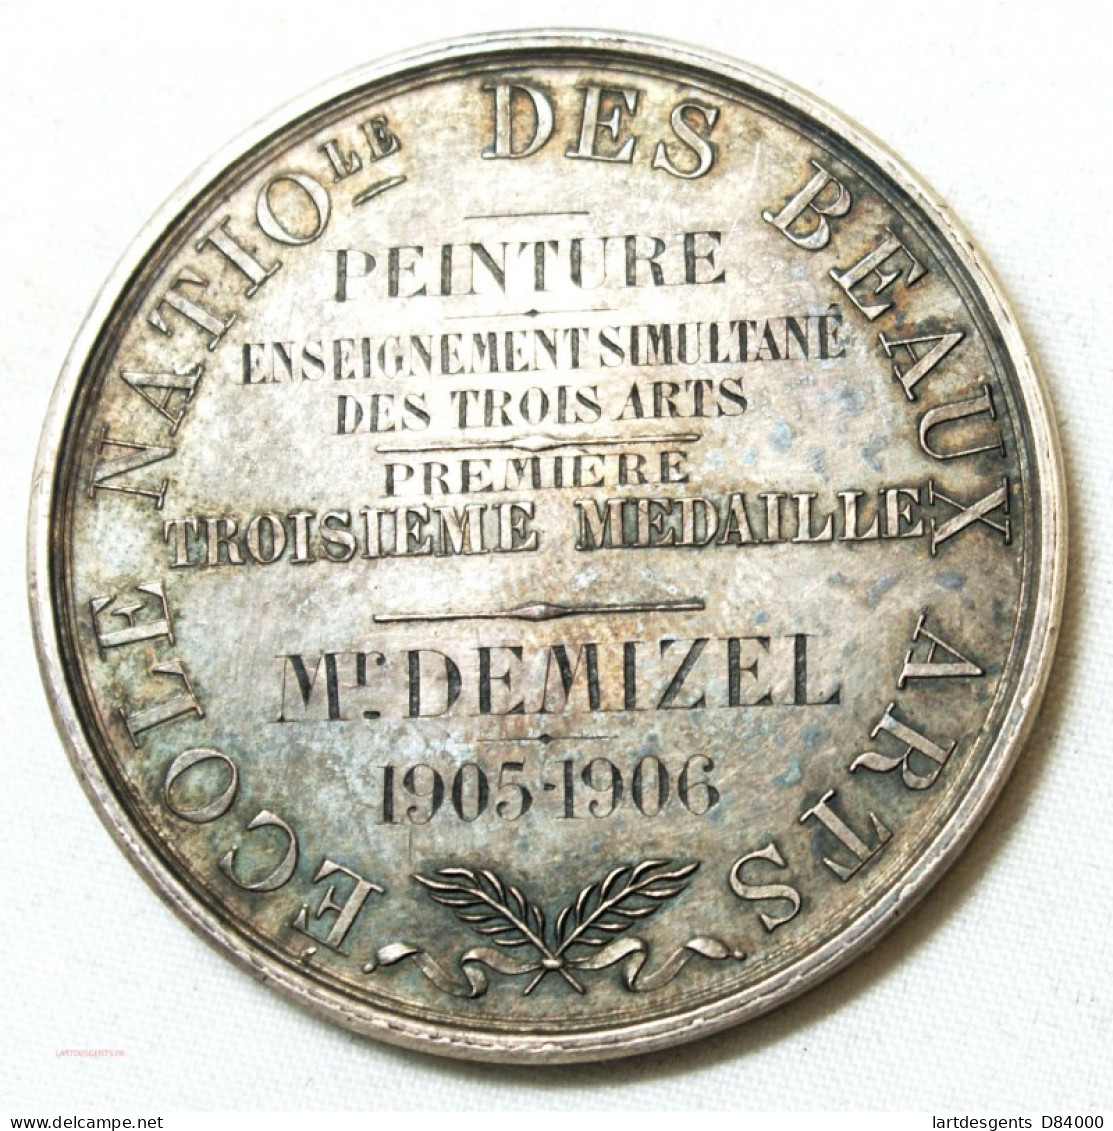 MEDAILLE Ecole Des Beaux Arts Décernée à M. DEMIZEL 1905-06 Par E. GATTEAUX. F. - Professionnels / De Société